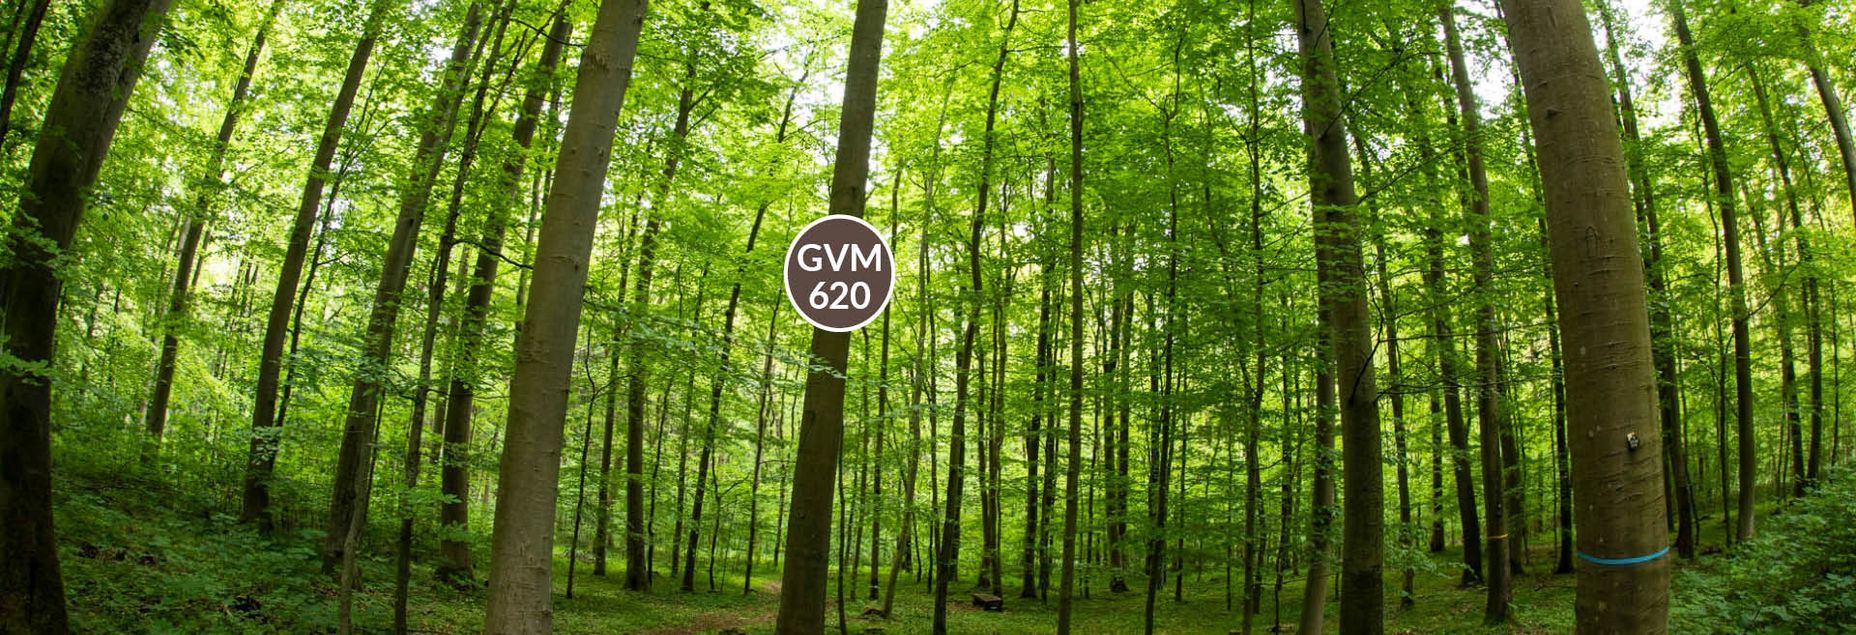 Baum GVM 620 - Fisheyeperspektive